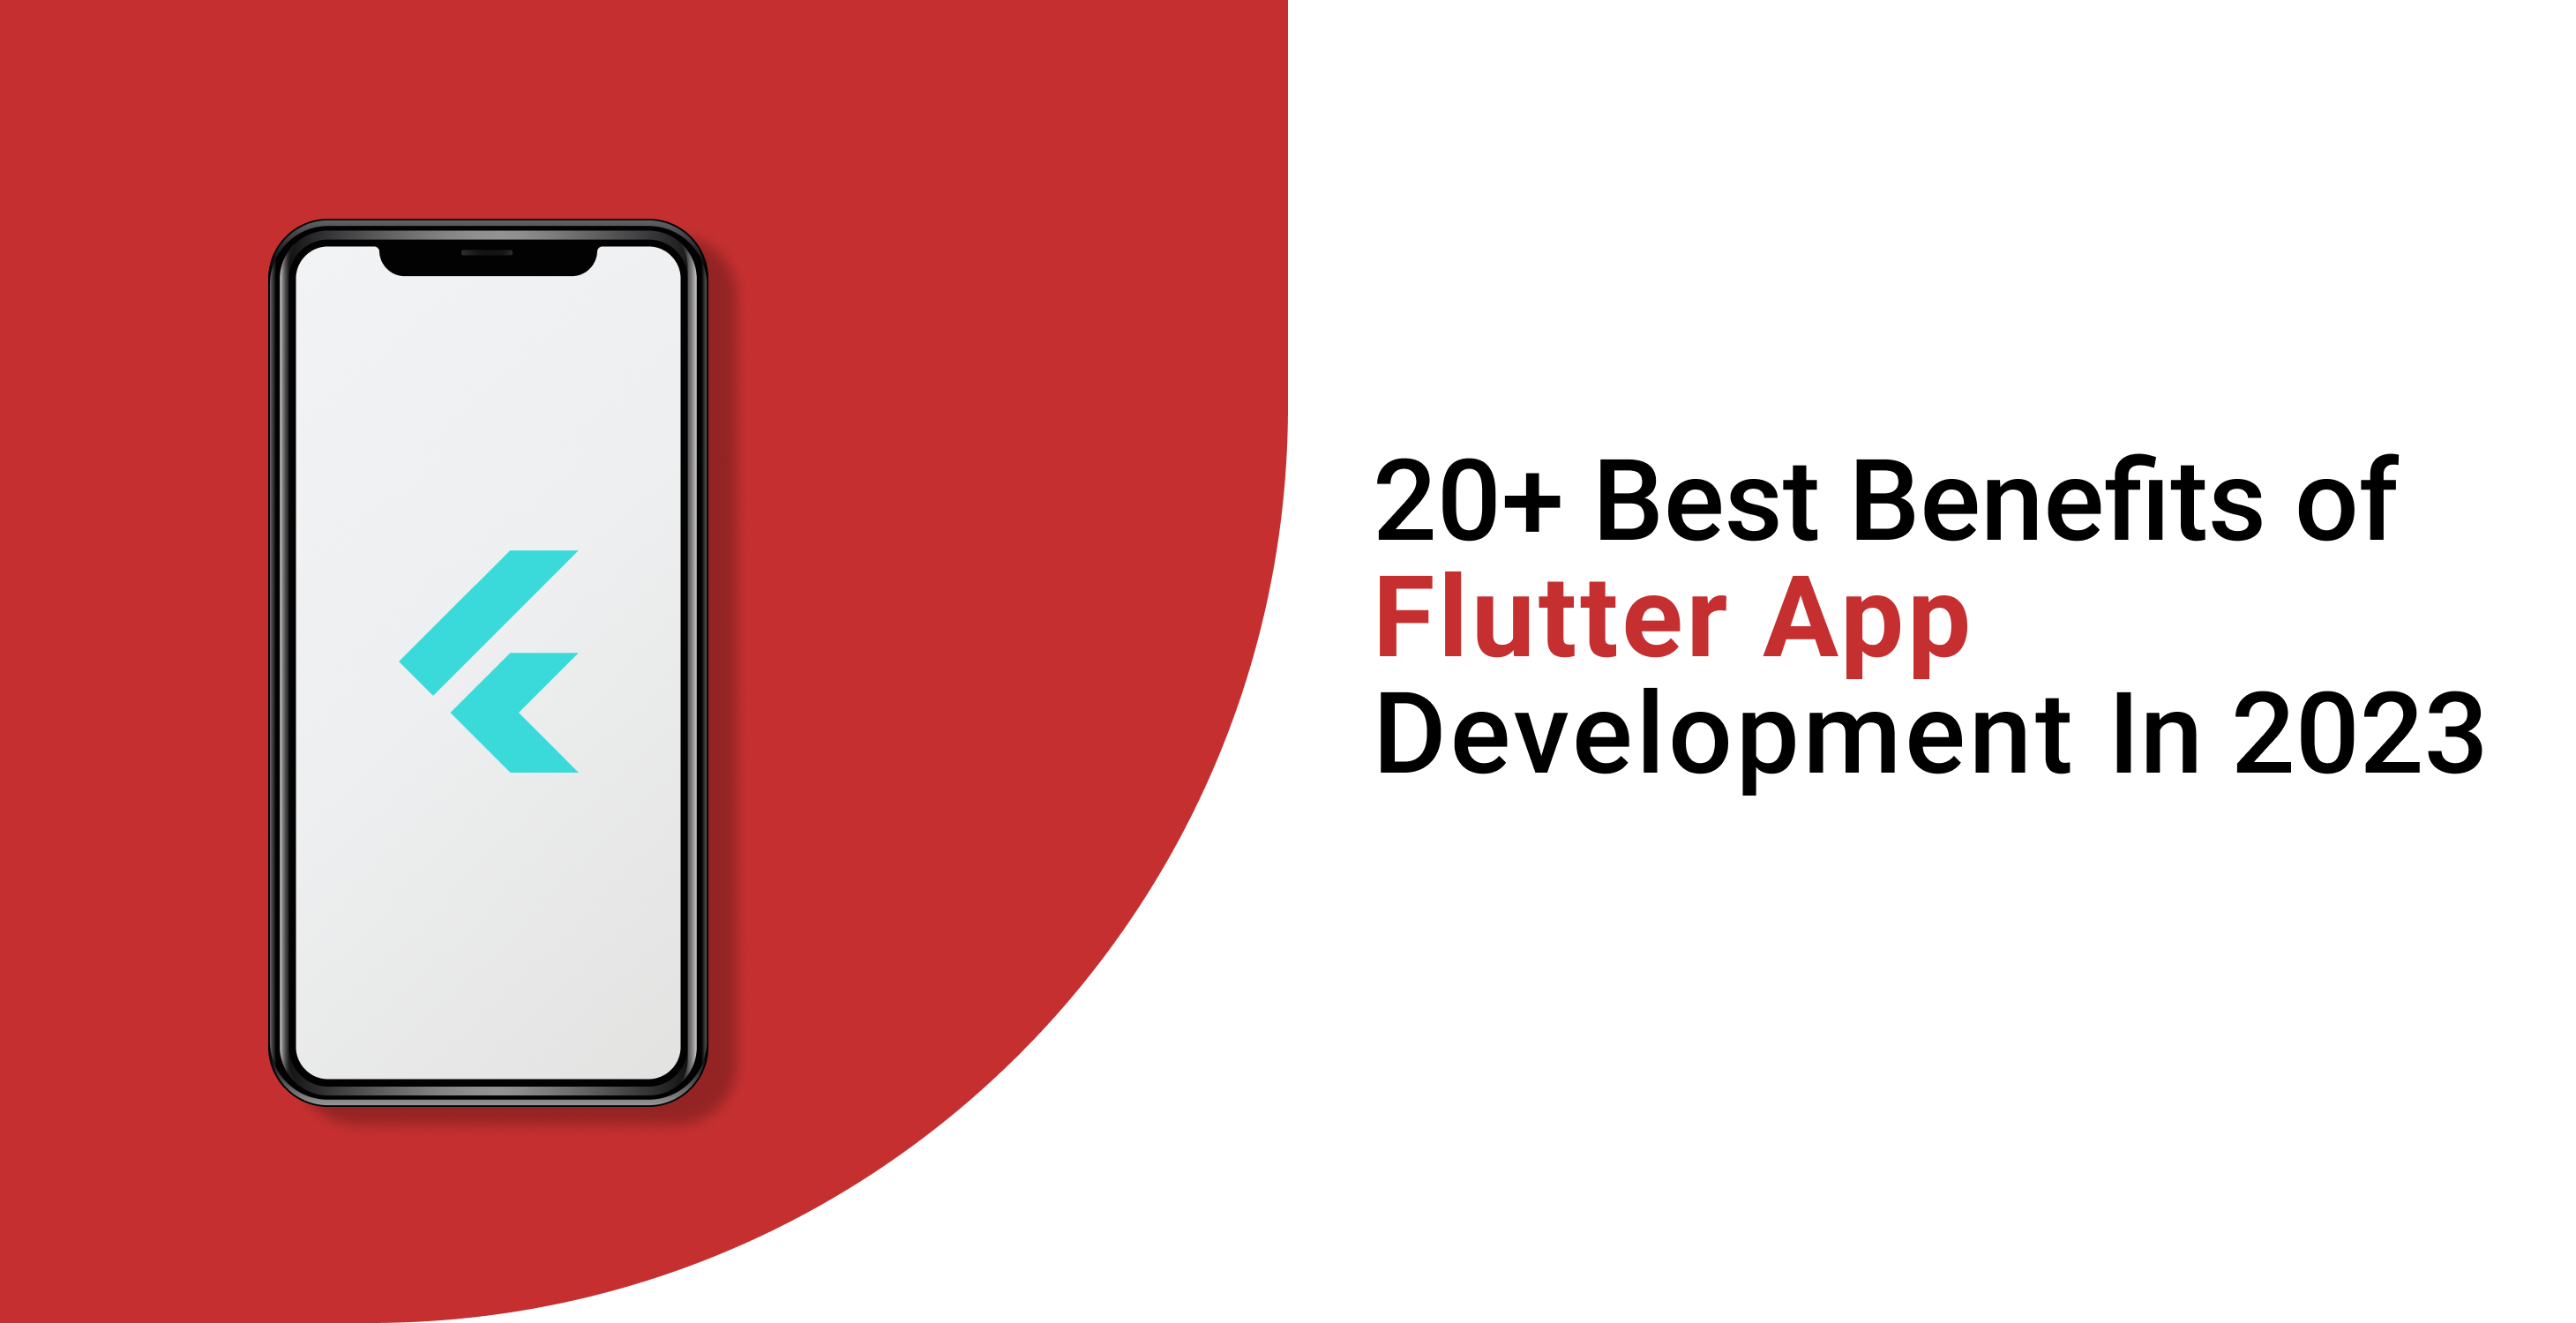 20+ Best Benefits of Flutter App Development in 2023